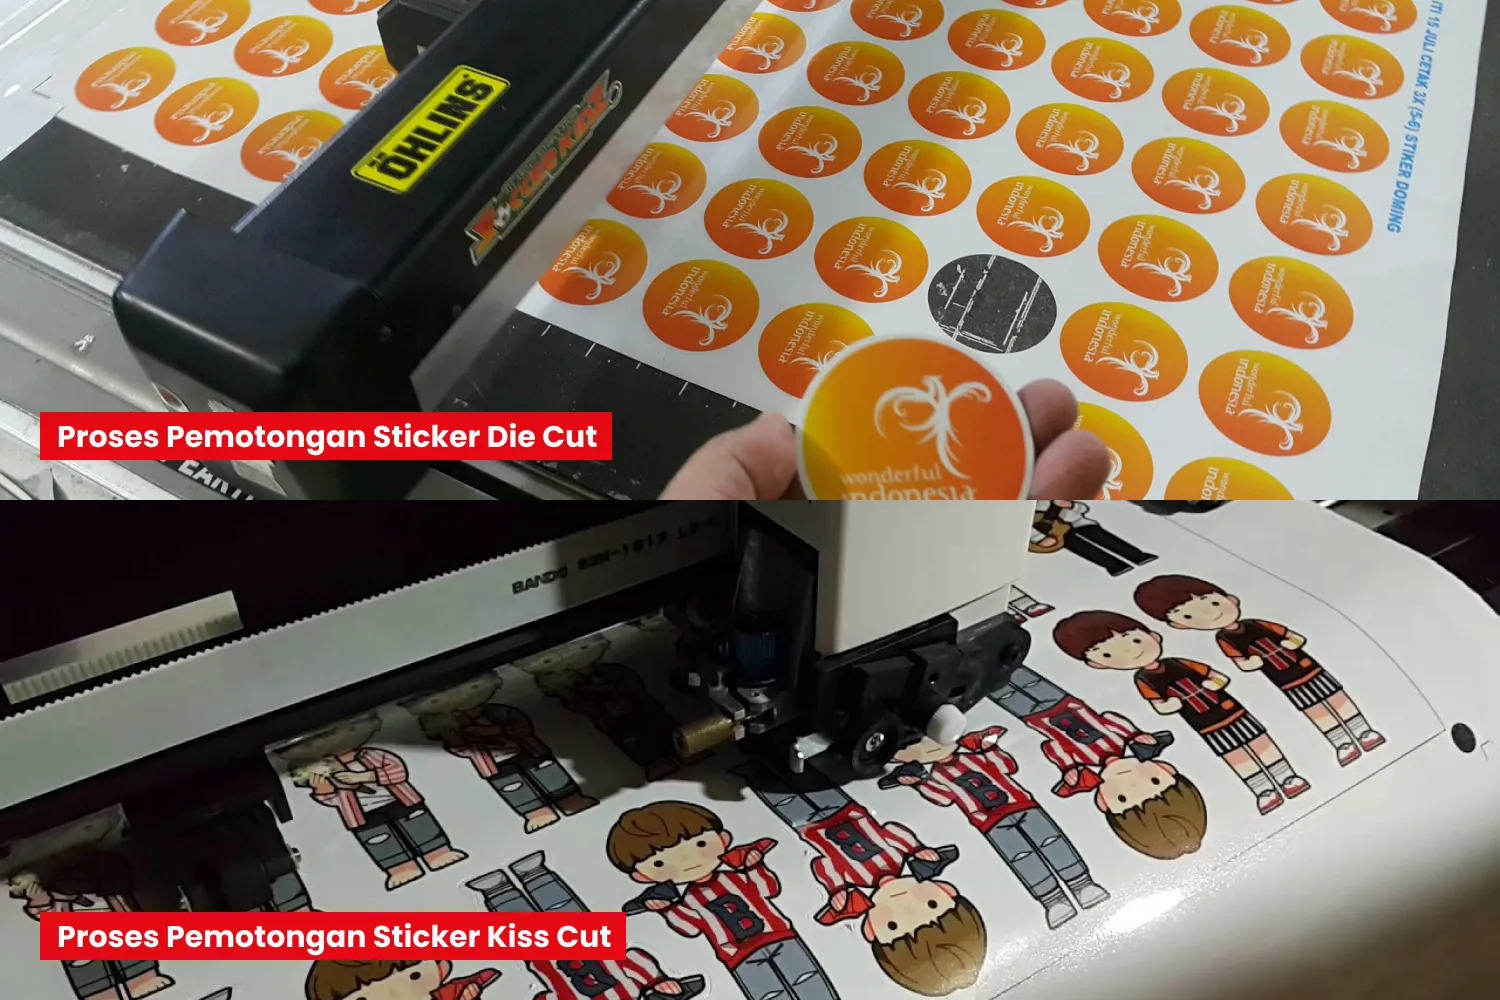 Proses Pemotongan Sticker Die Cut Dan Kiss Cut.